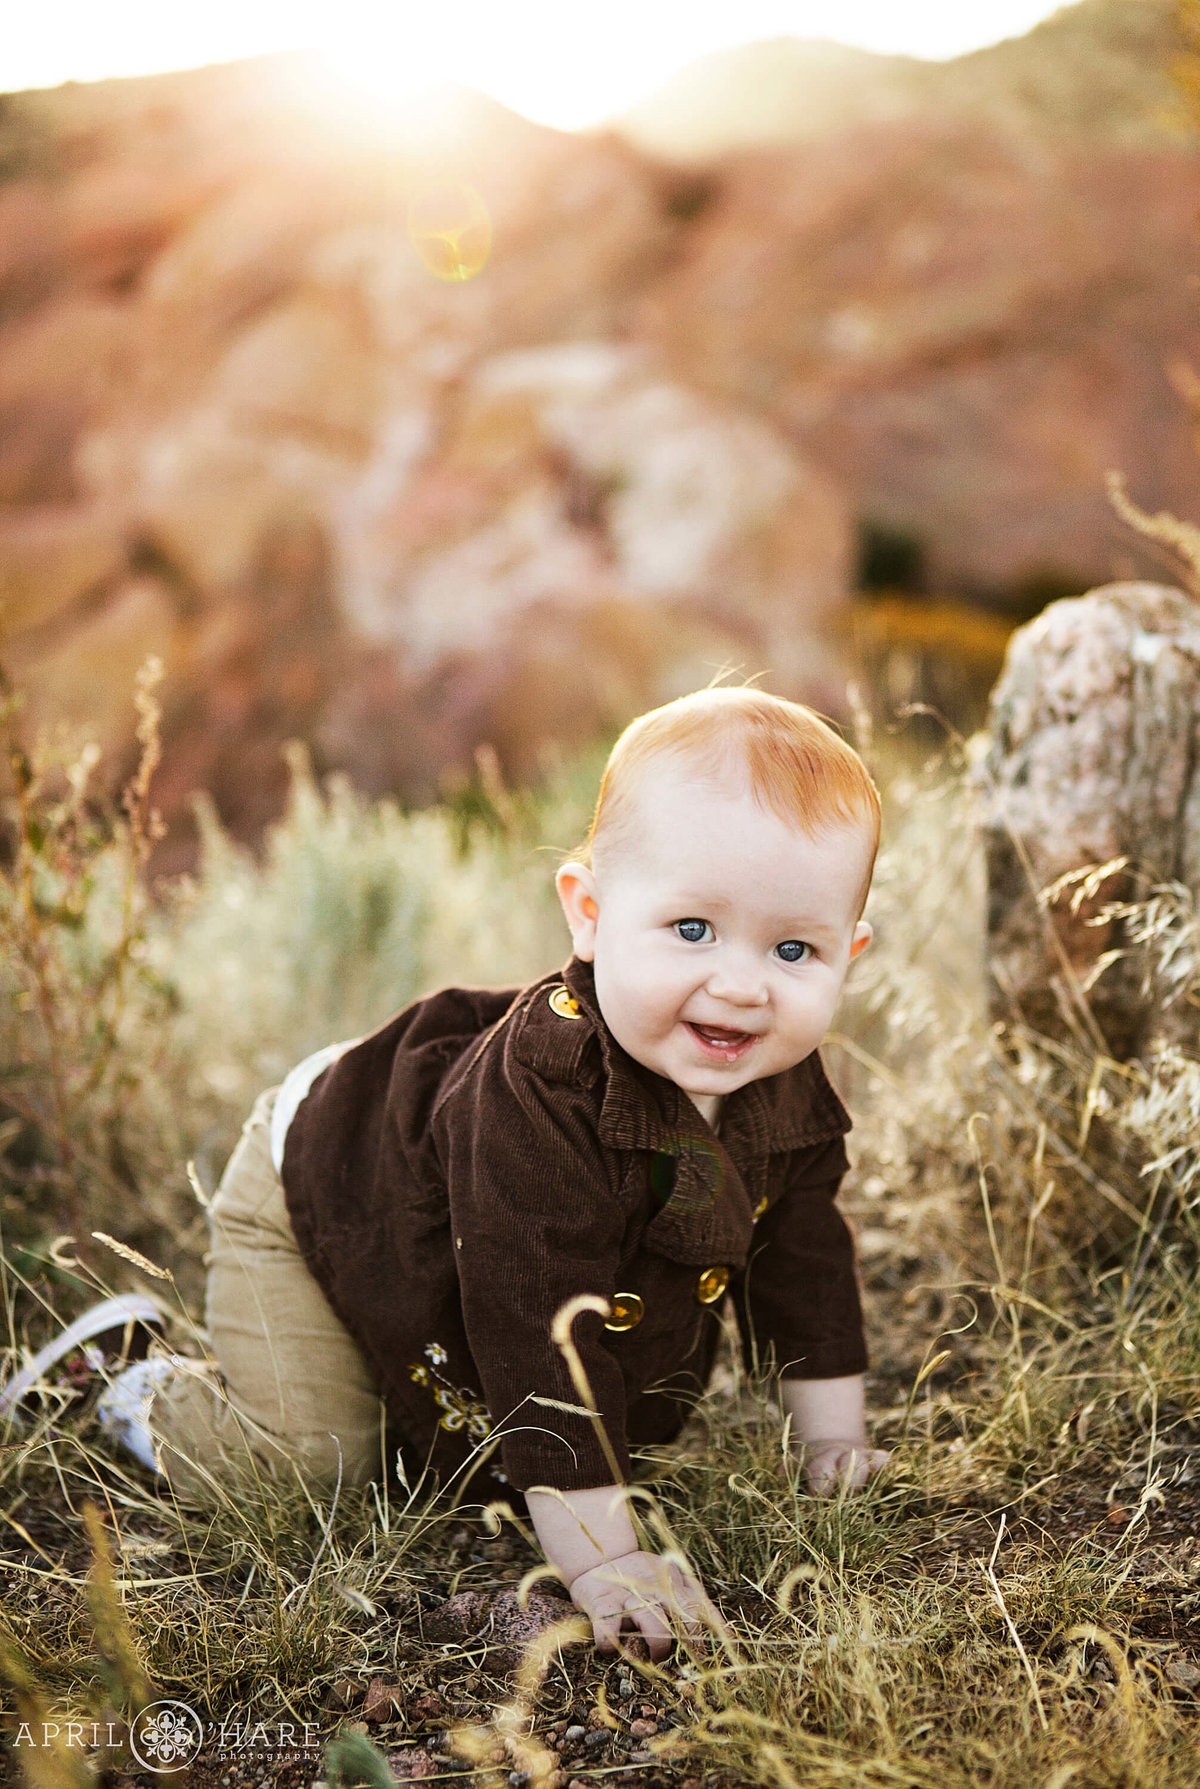 Cute Baby photo at Red Rocks in Denver Colorado